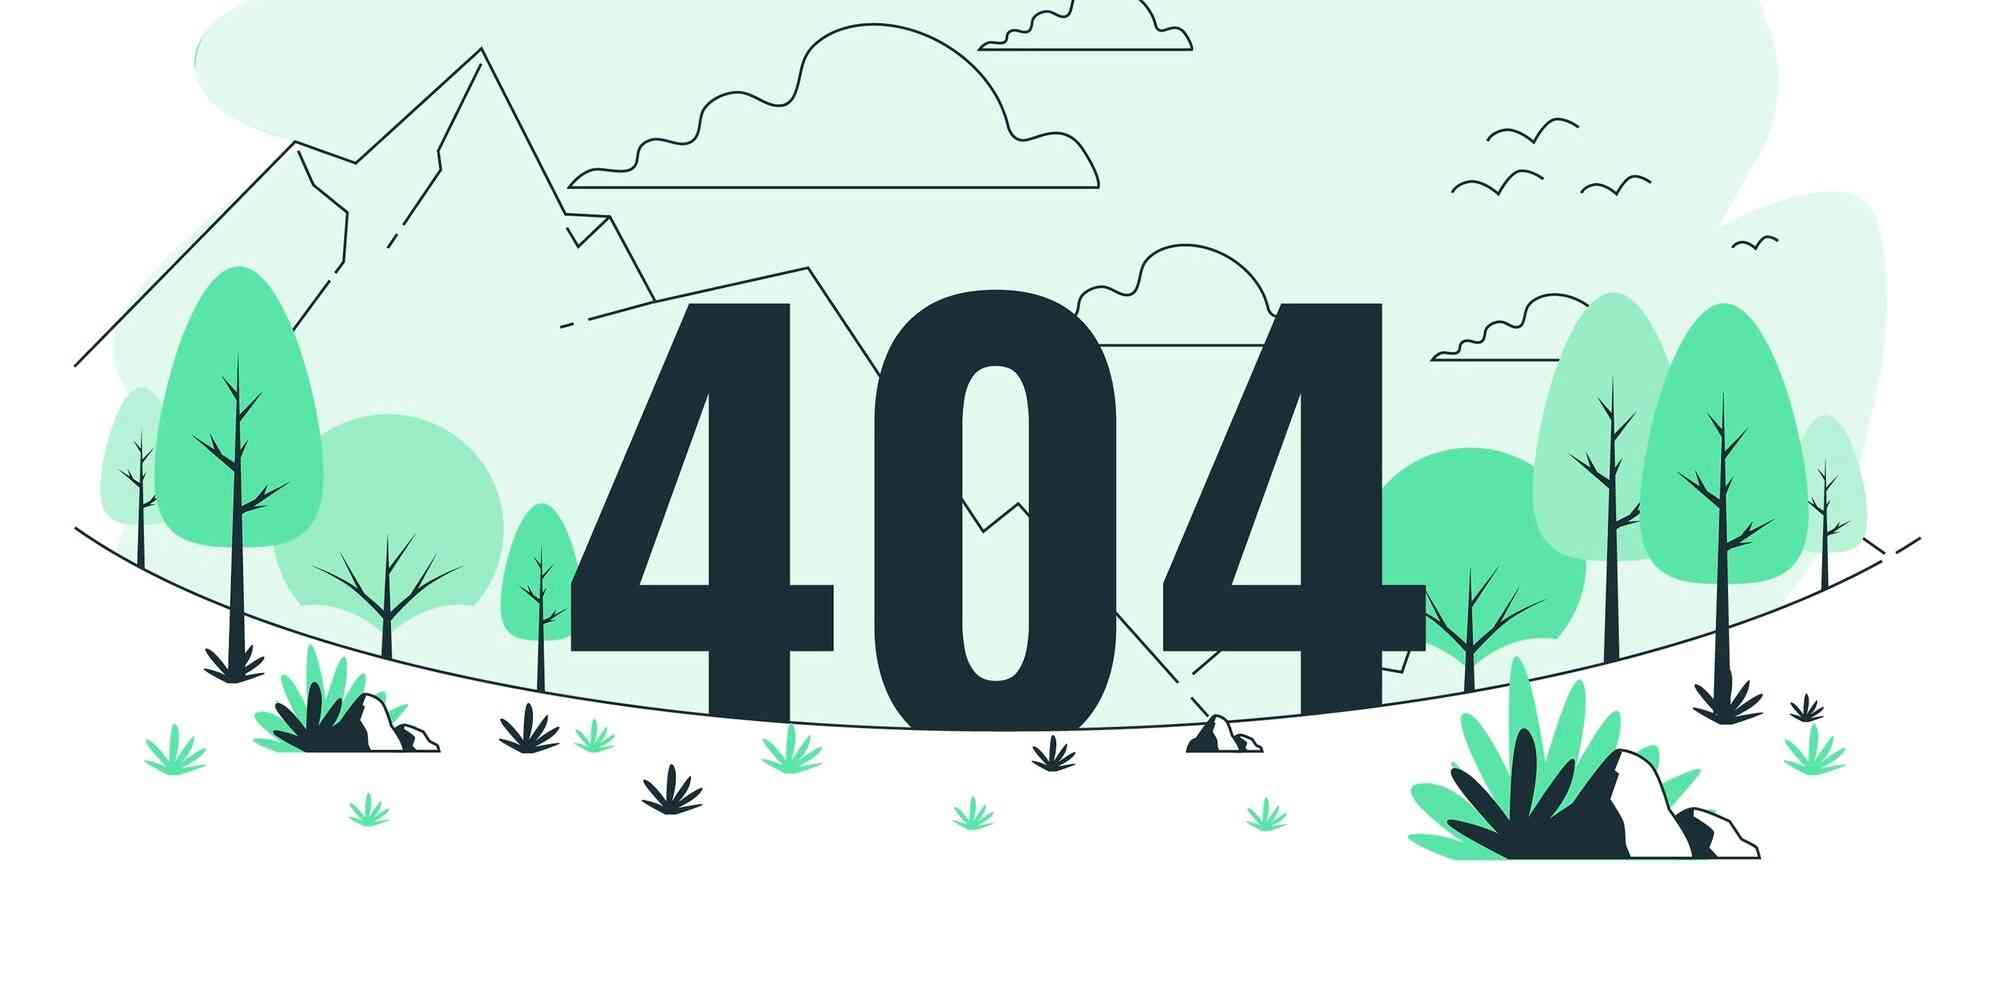 一个404的页面，背景是山林中的树木和鸟儿。